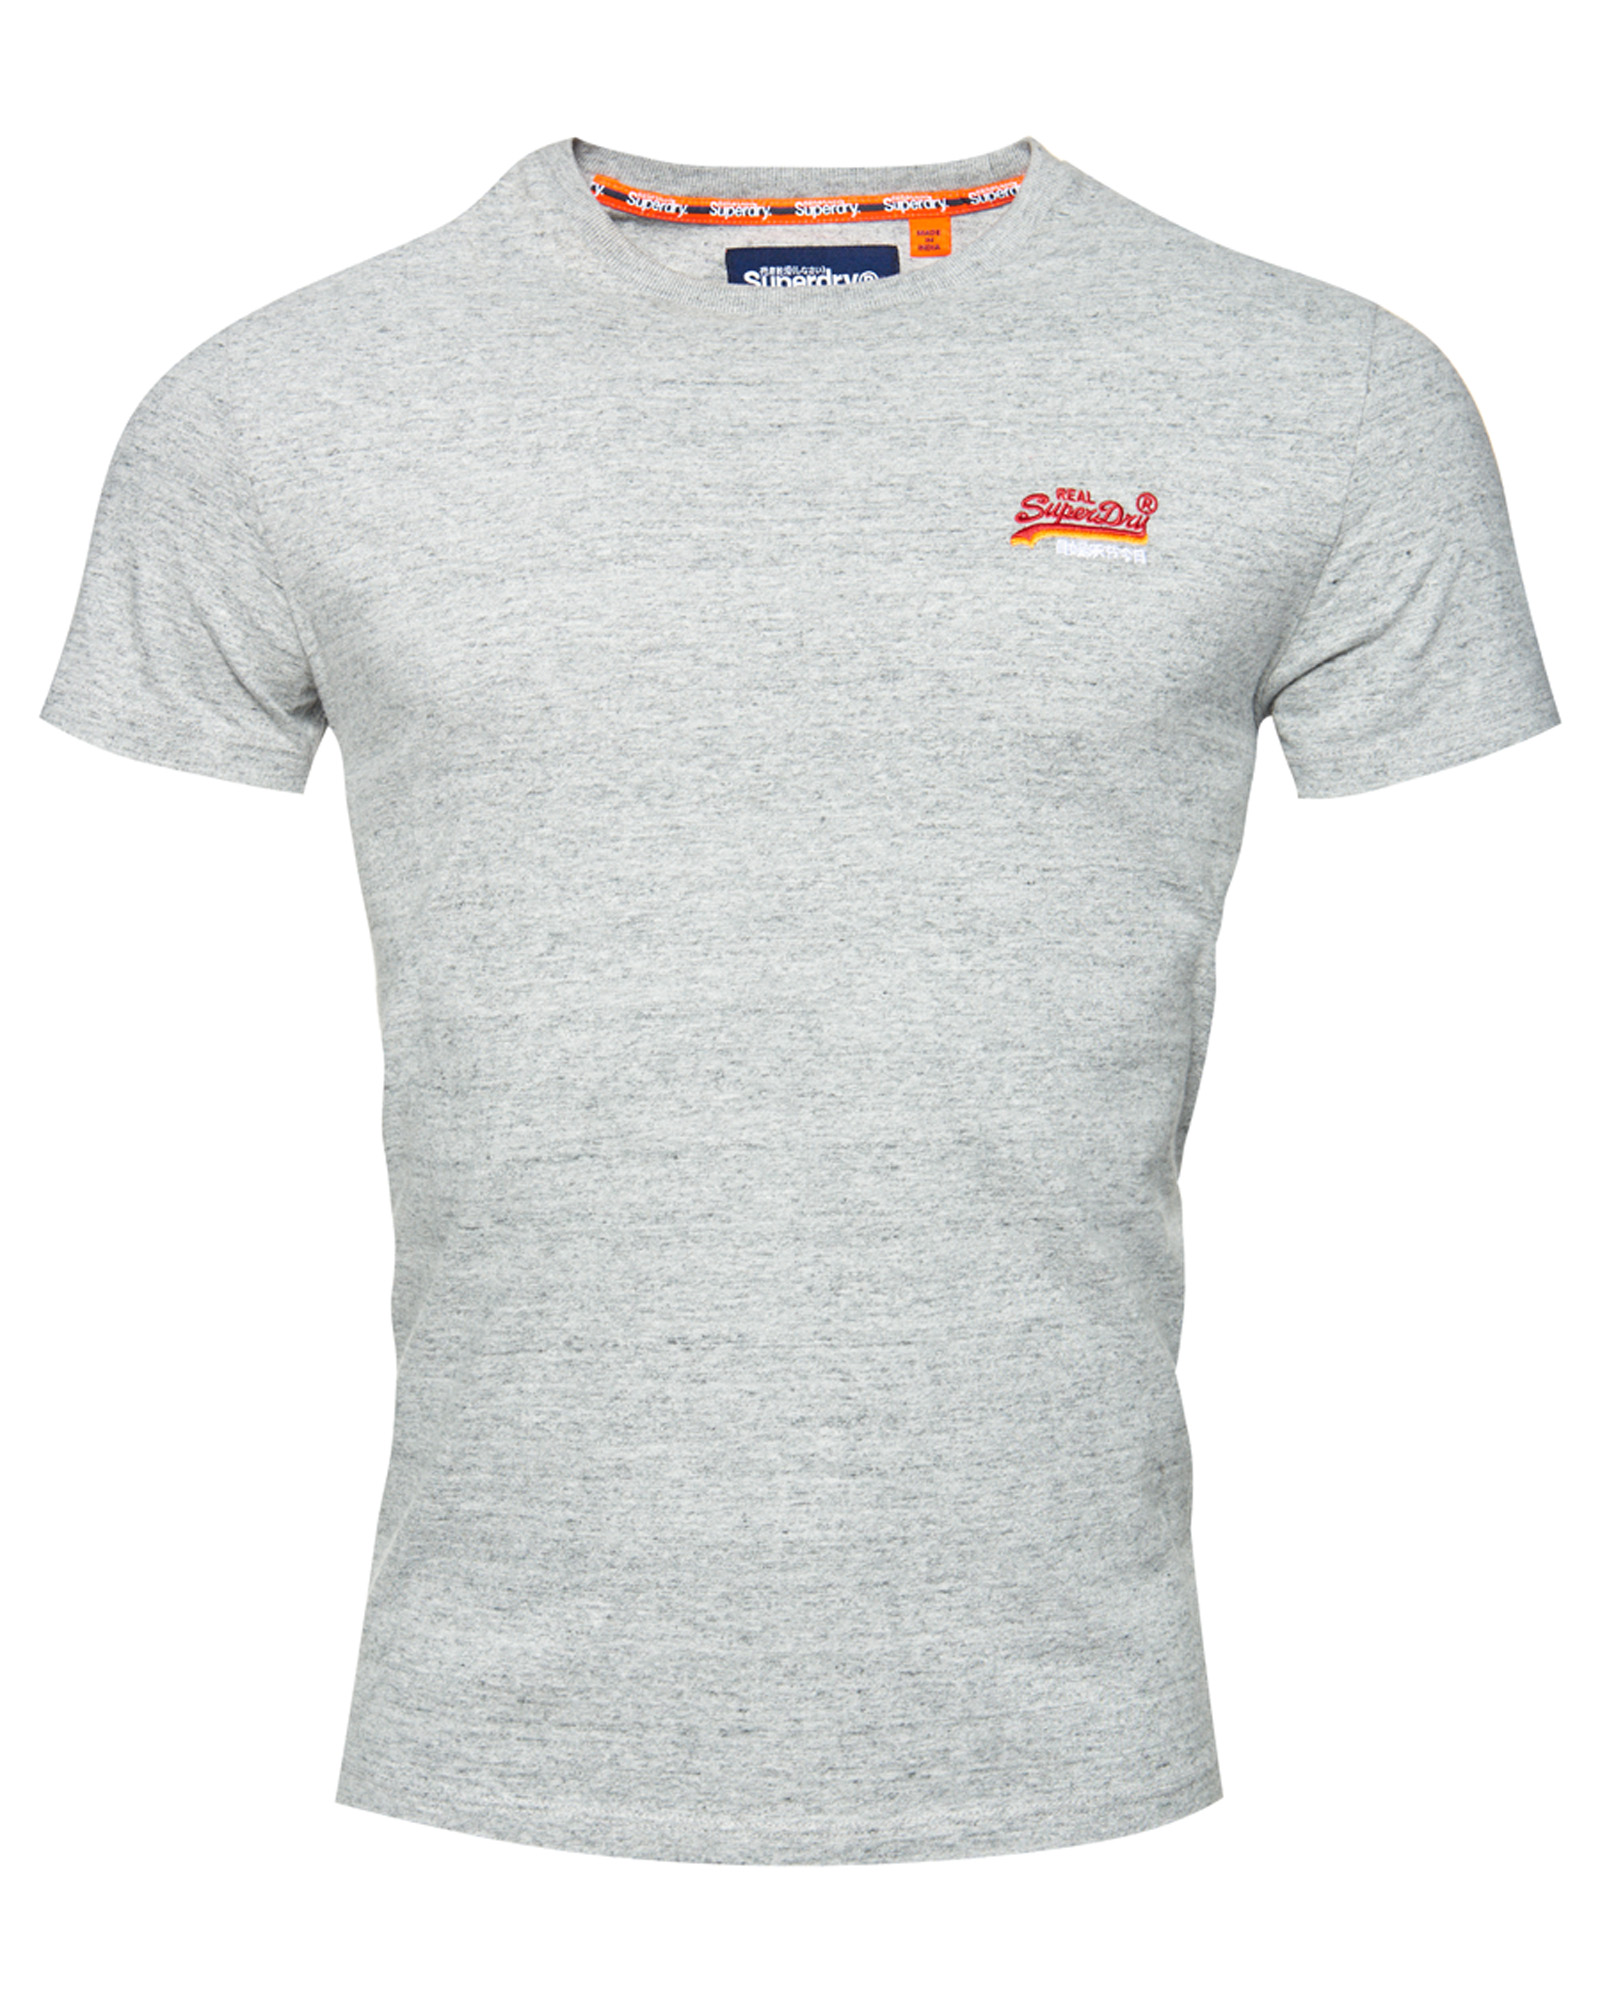 Superdry Mens Orange Label Vintage Embroidery T-Shirt | eBay